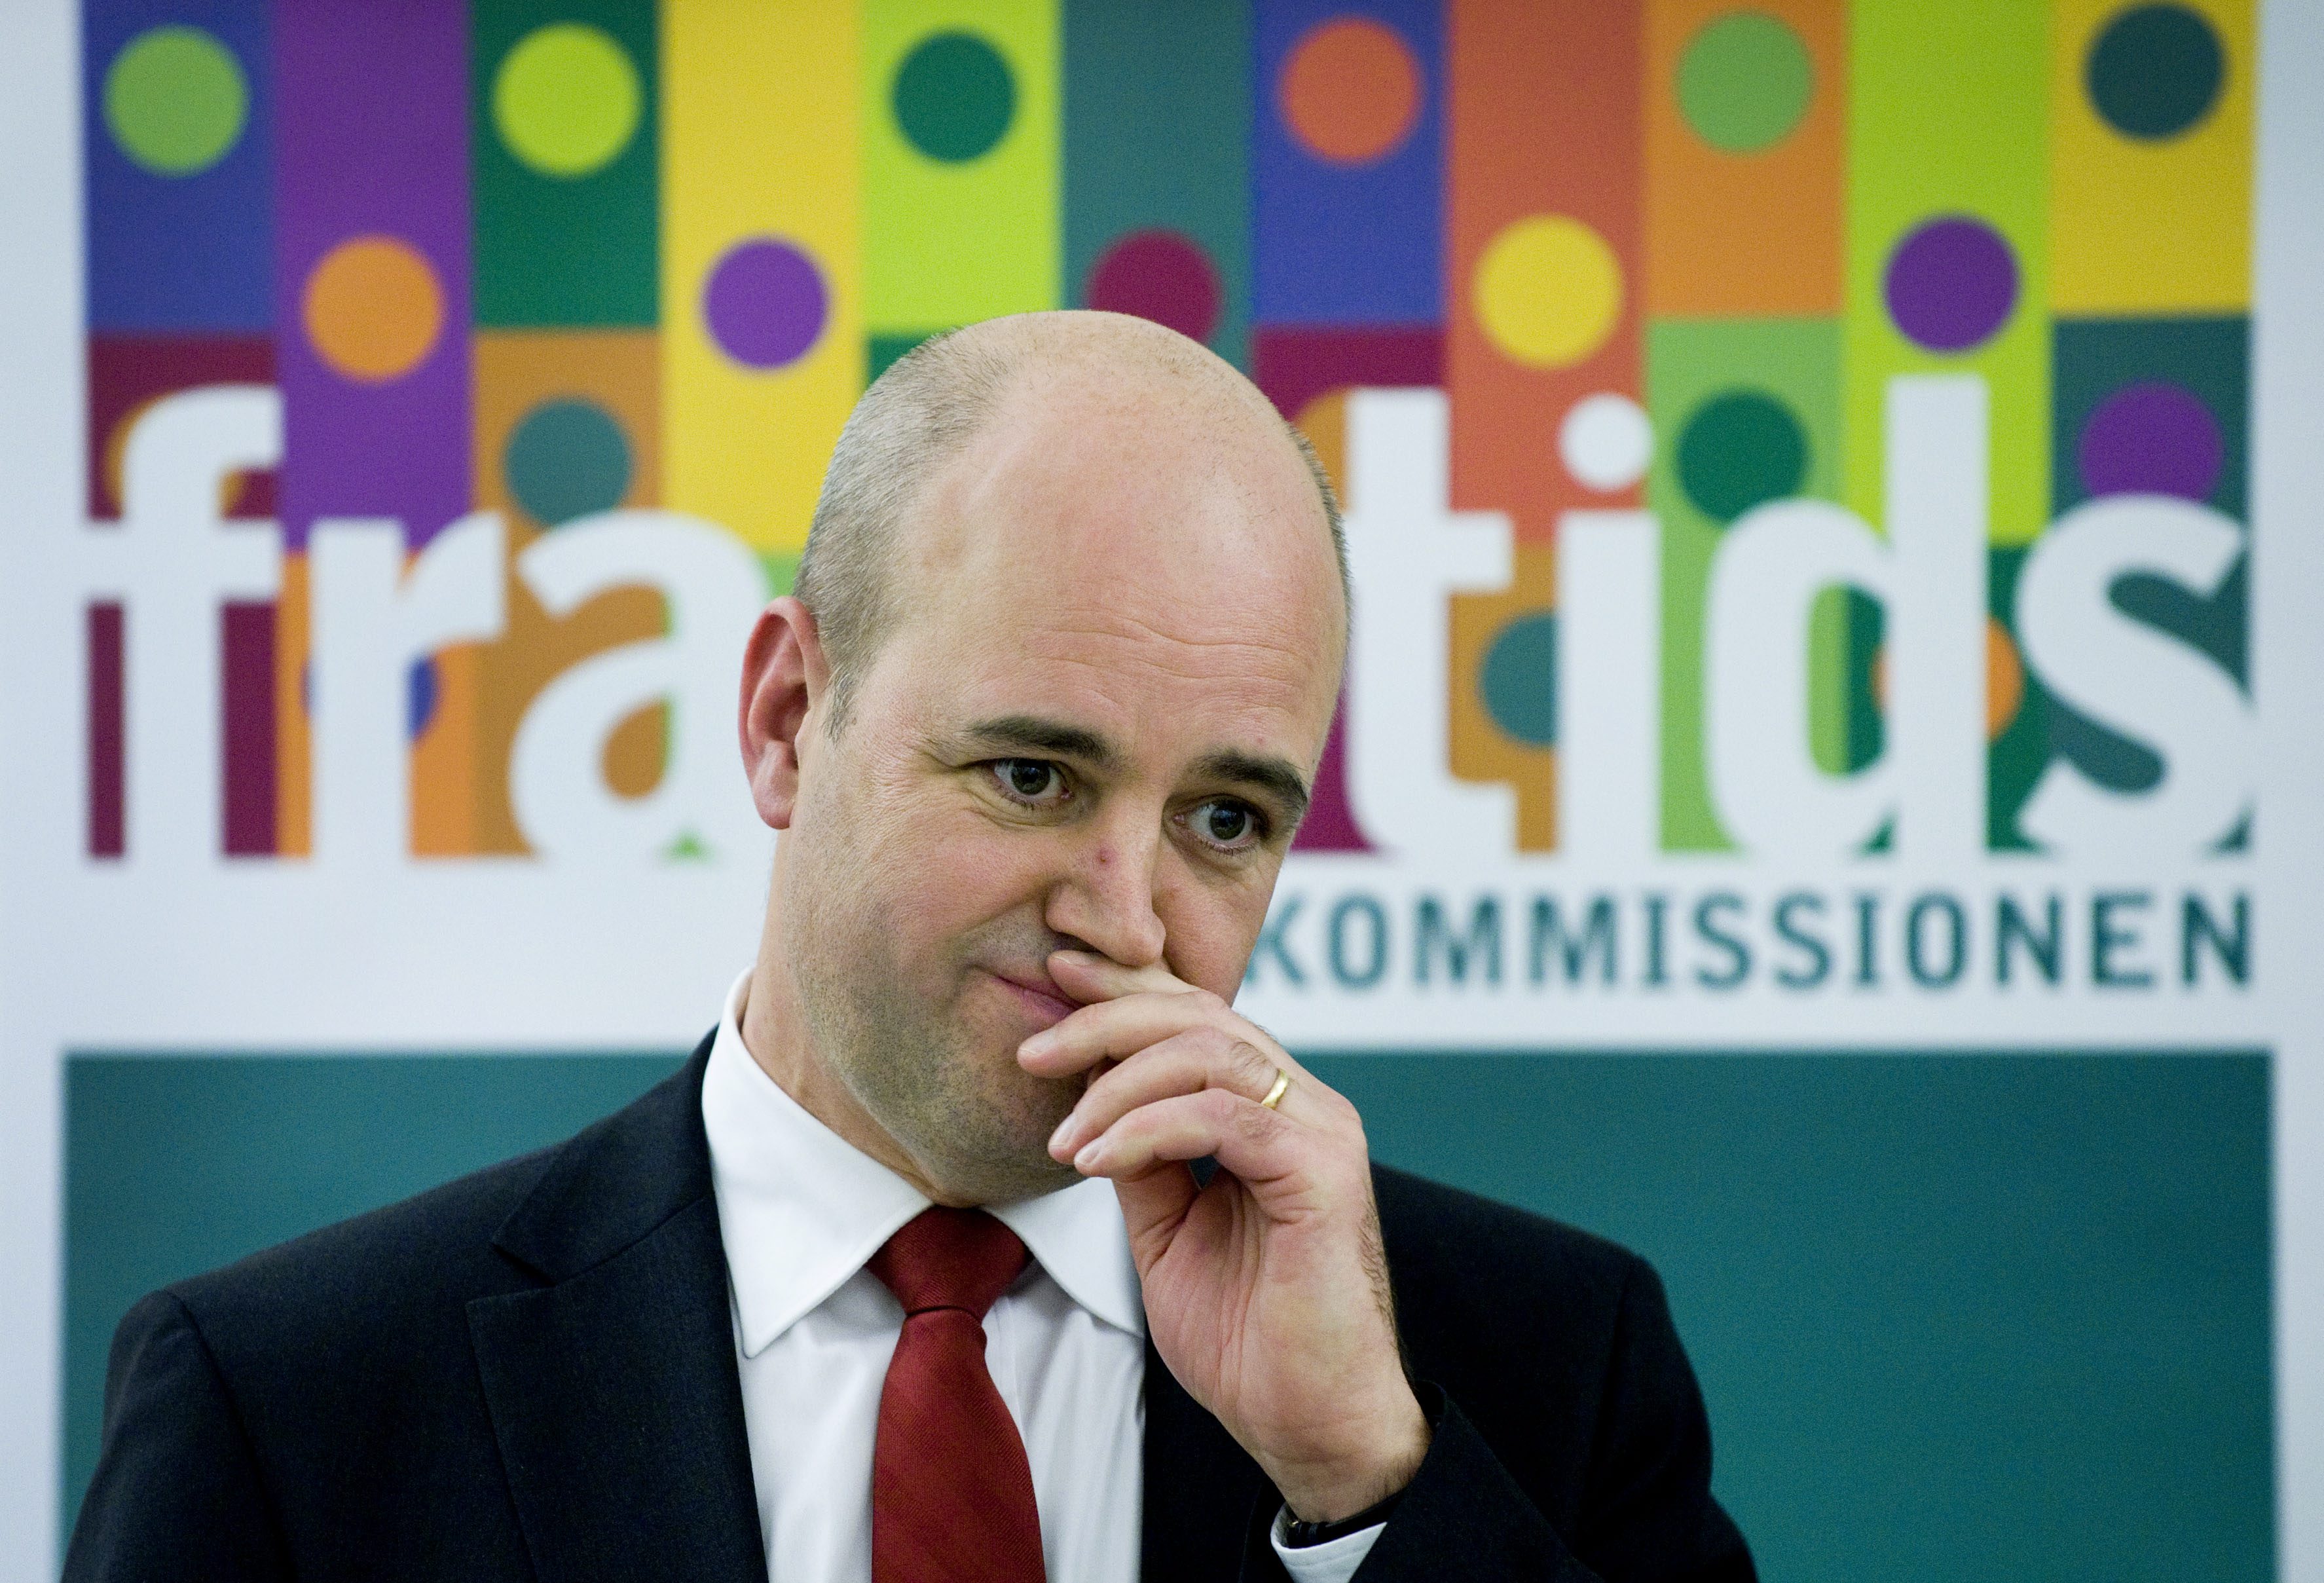 Reinfeldt snackade framtid. Sin tillsatte han en kommission för att ta reda på hur den framtiden bör se ut. 